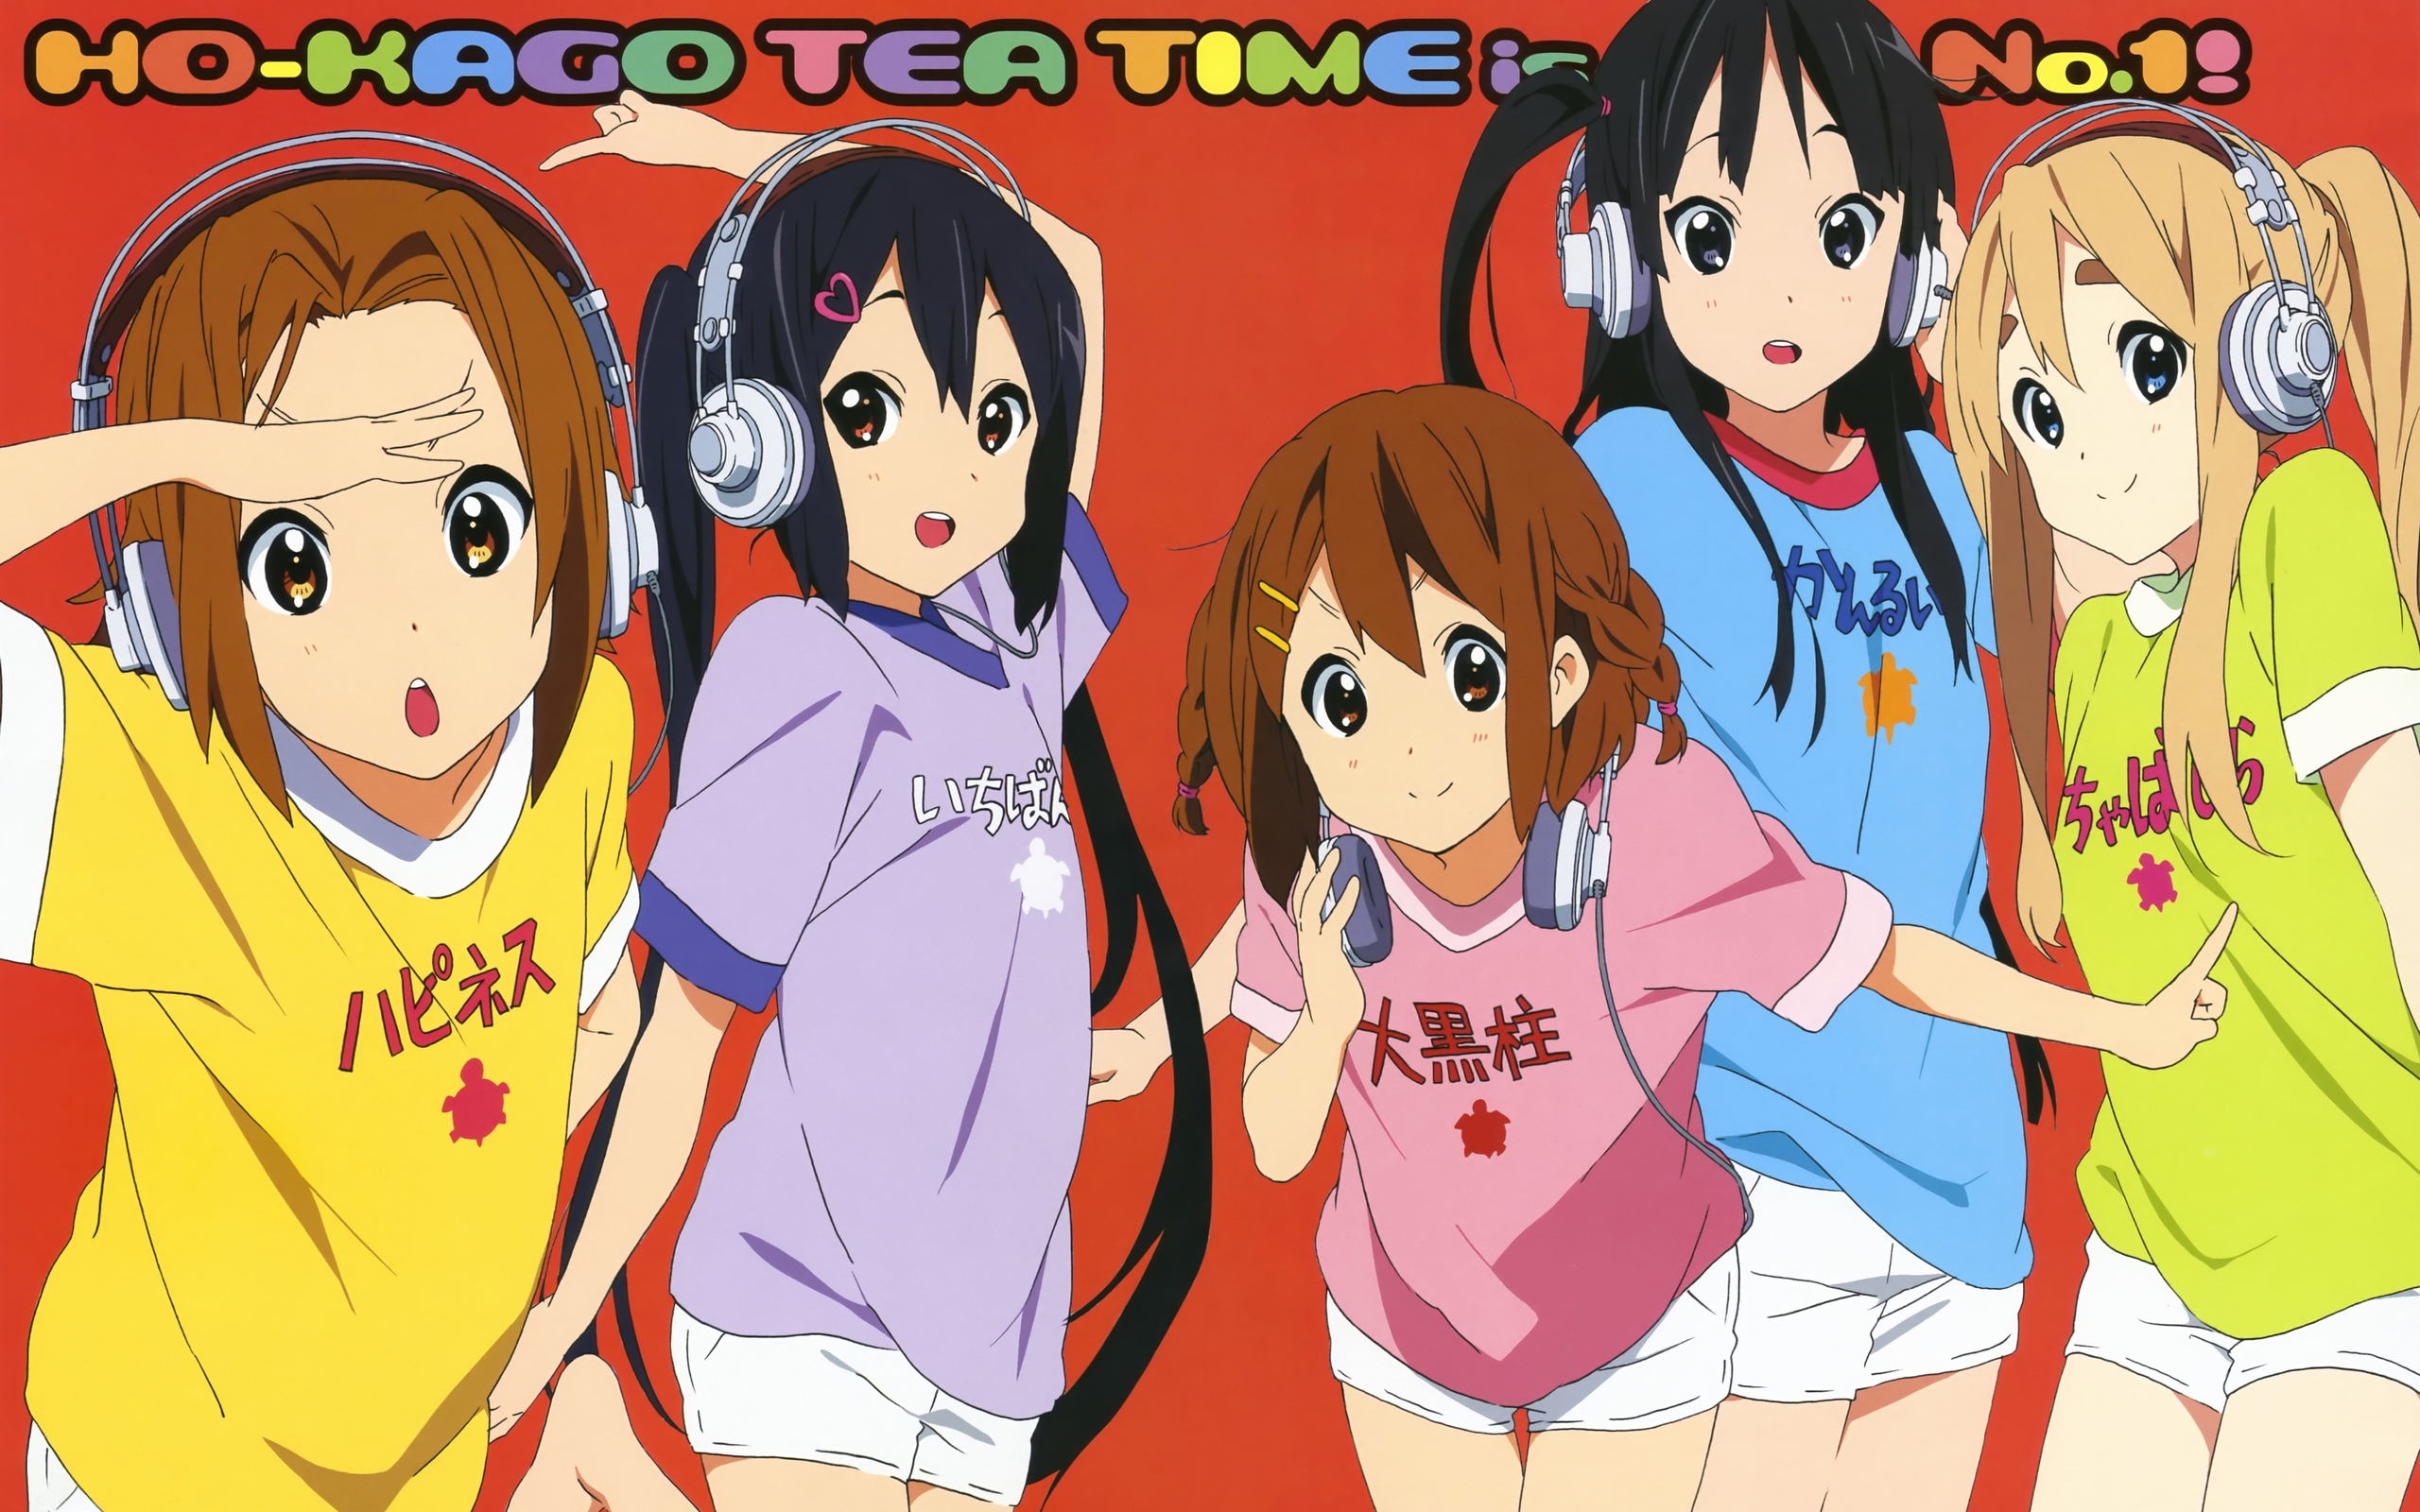 K-ON!, Akiyama Mio, Tainaka Ritsu, Kotobuki Tsumugi, Nakano Azusa, Ho-Kago Tea Time - desktop wallpaper